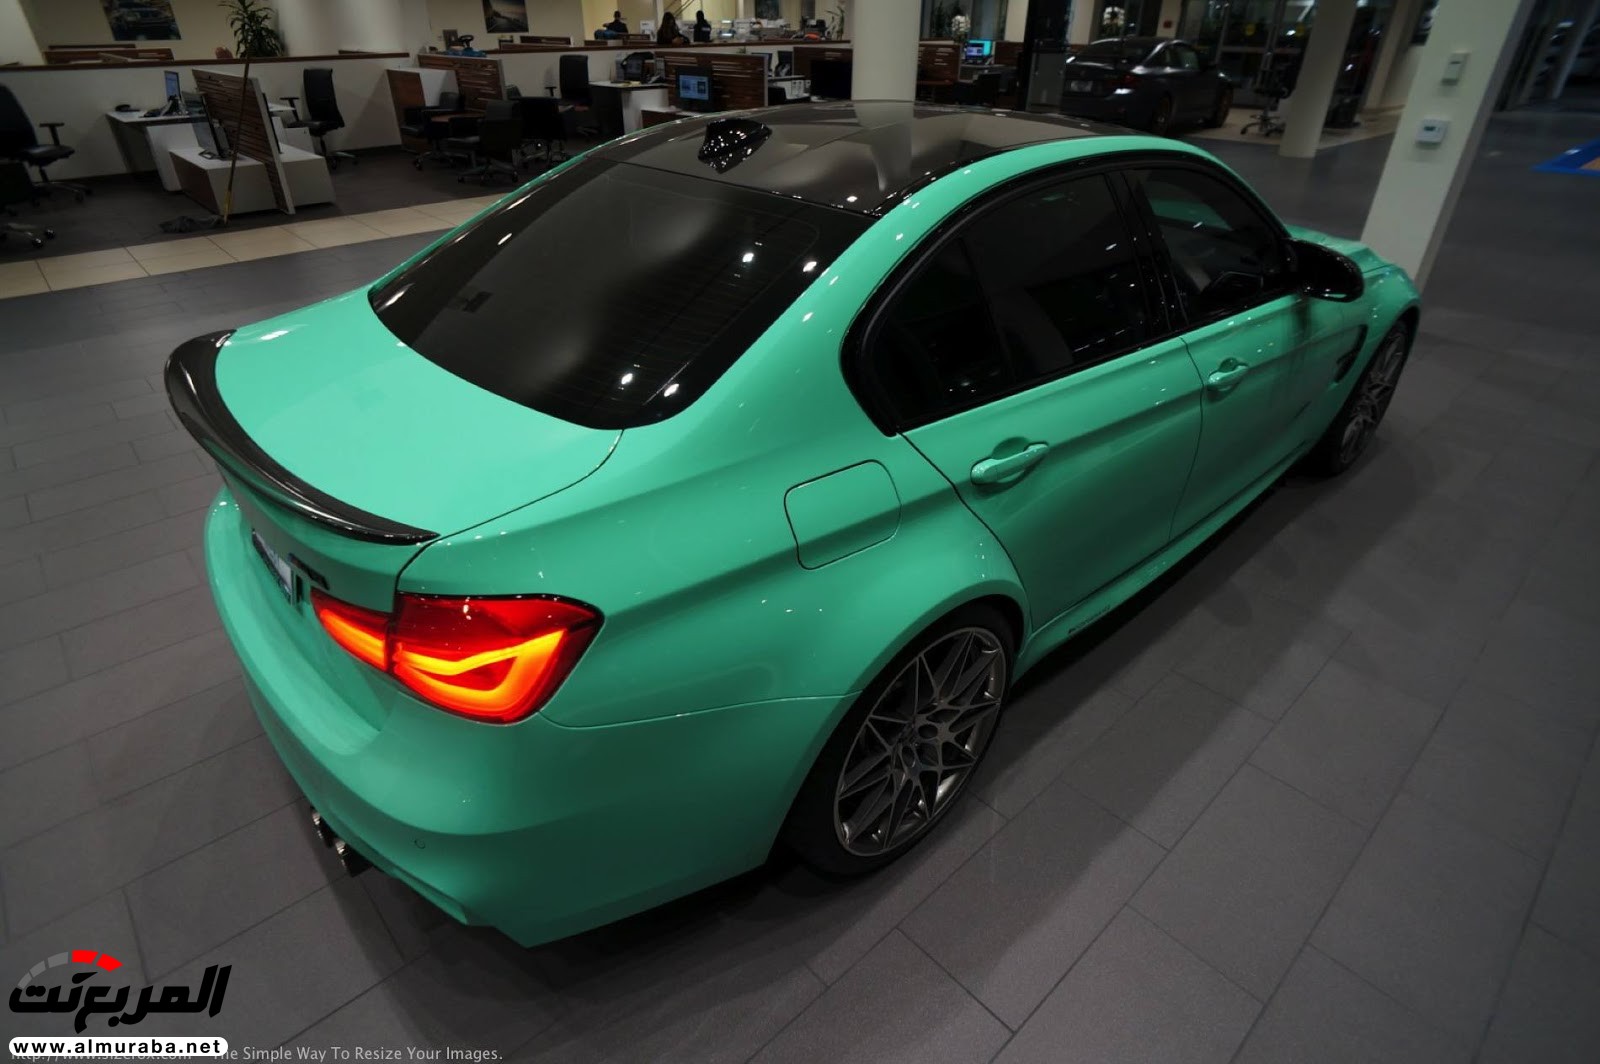 "بالصور" شاهد "بي إم دبليو" F80 M3 الخاصة بطلاء النعناع الأخضر BMW 105